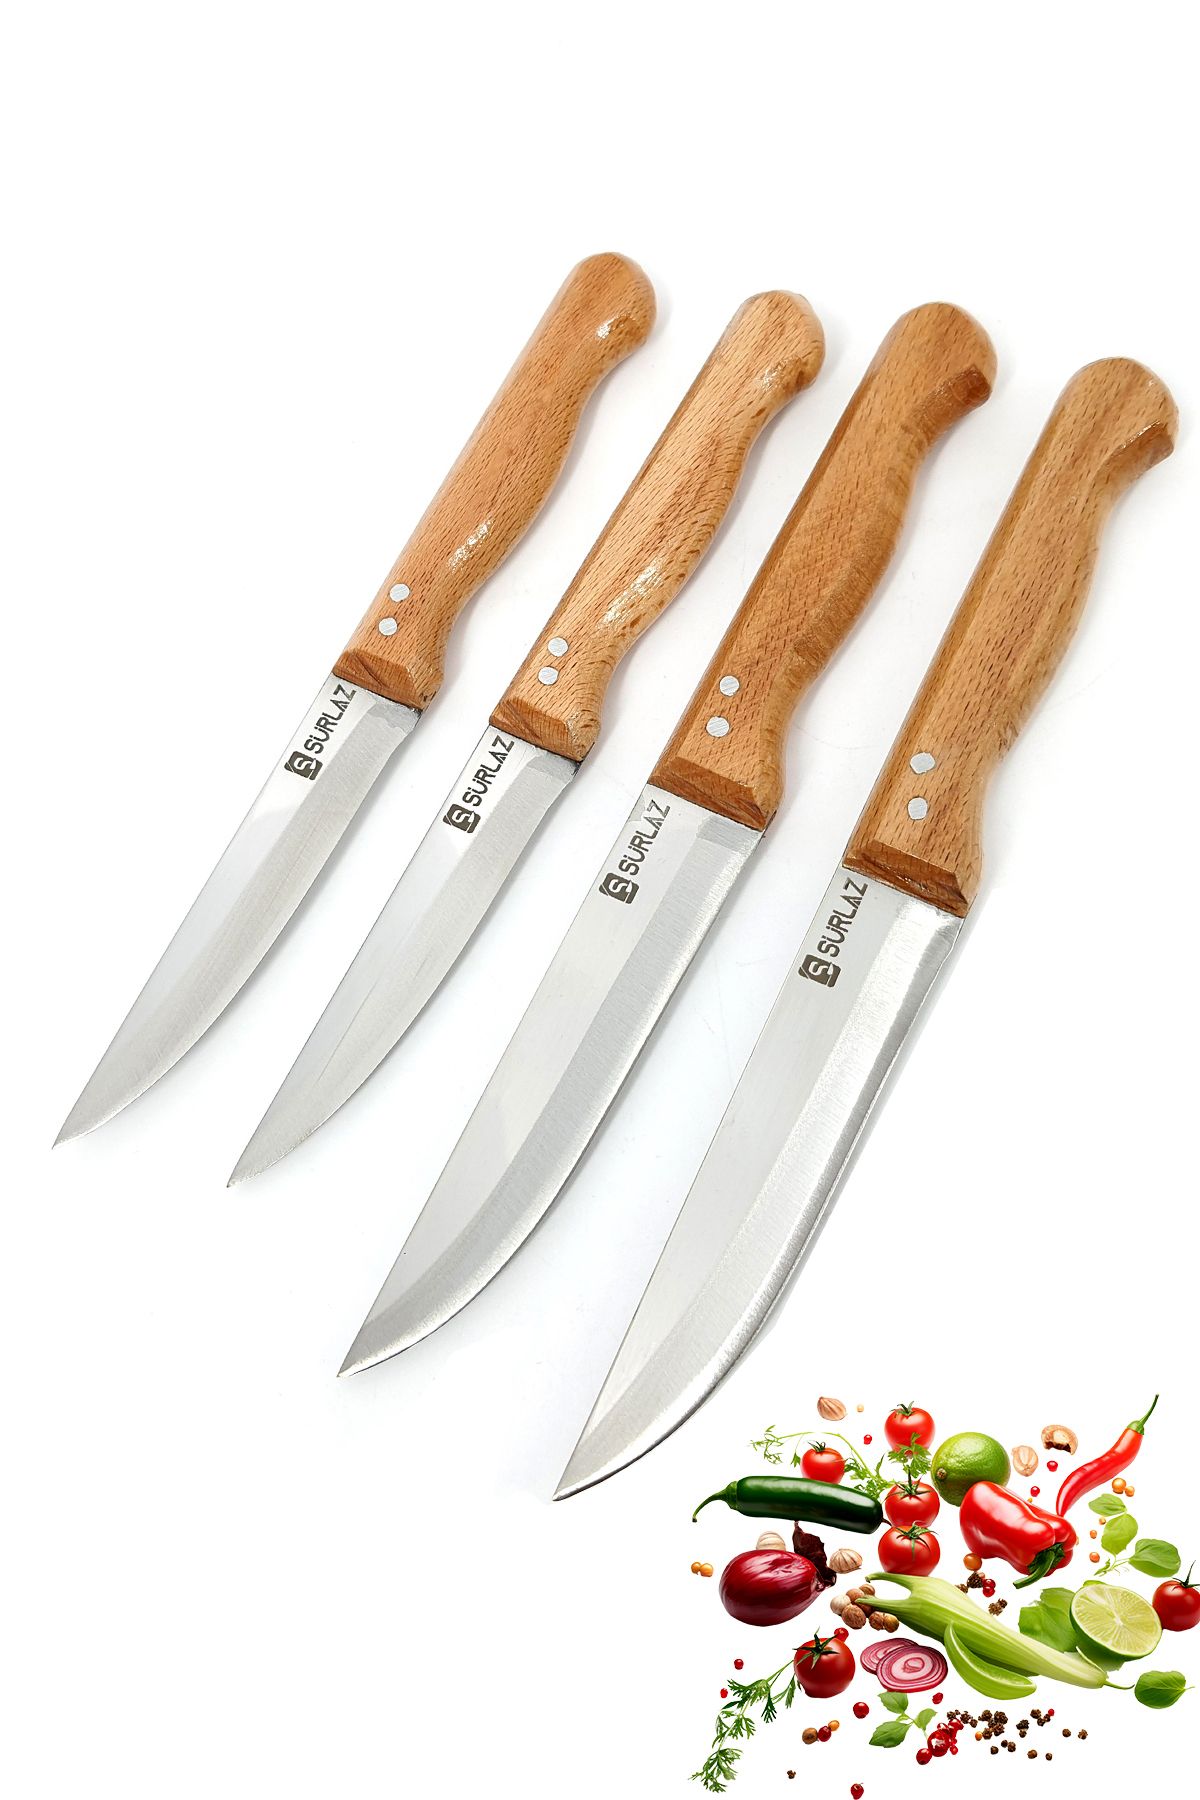 SürLaz Sürmene Mutfak Bıçak Seti Et Ekmek Sebze Meyve Bıçak 4 Parça